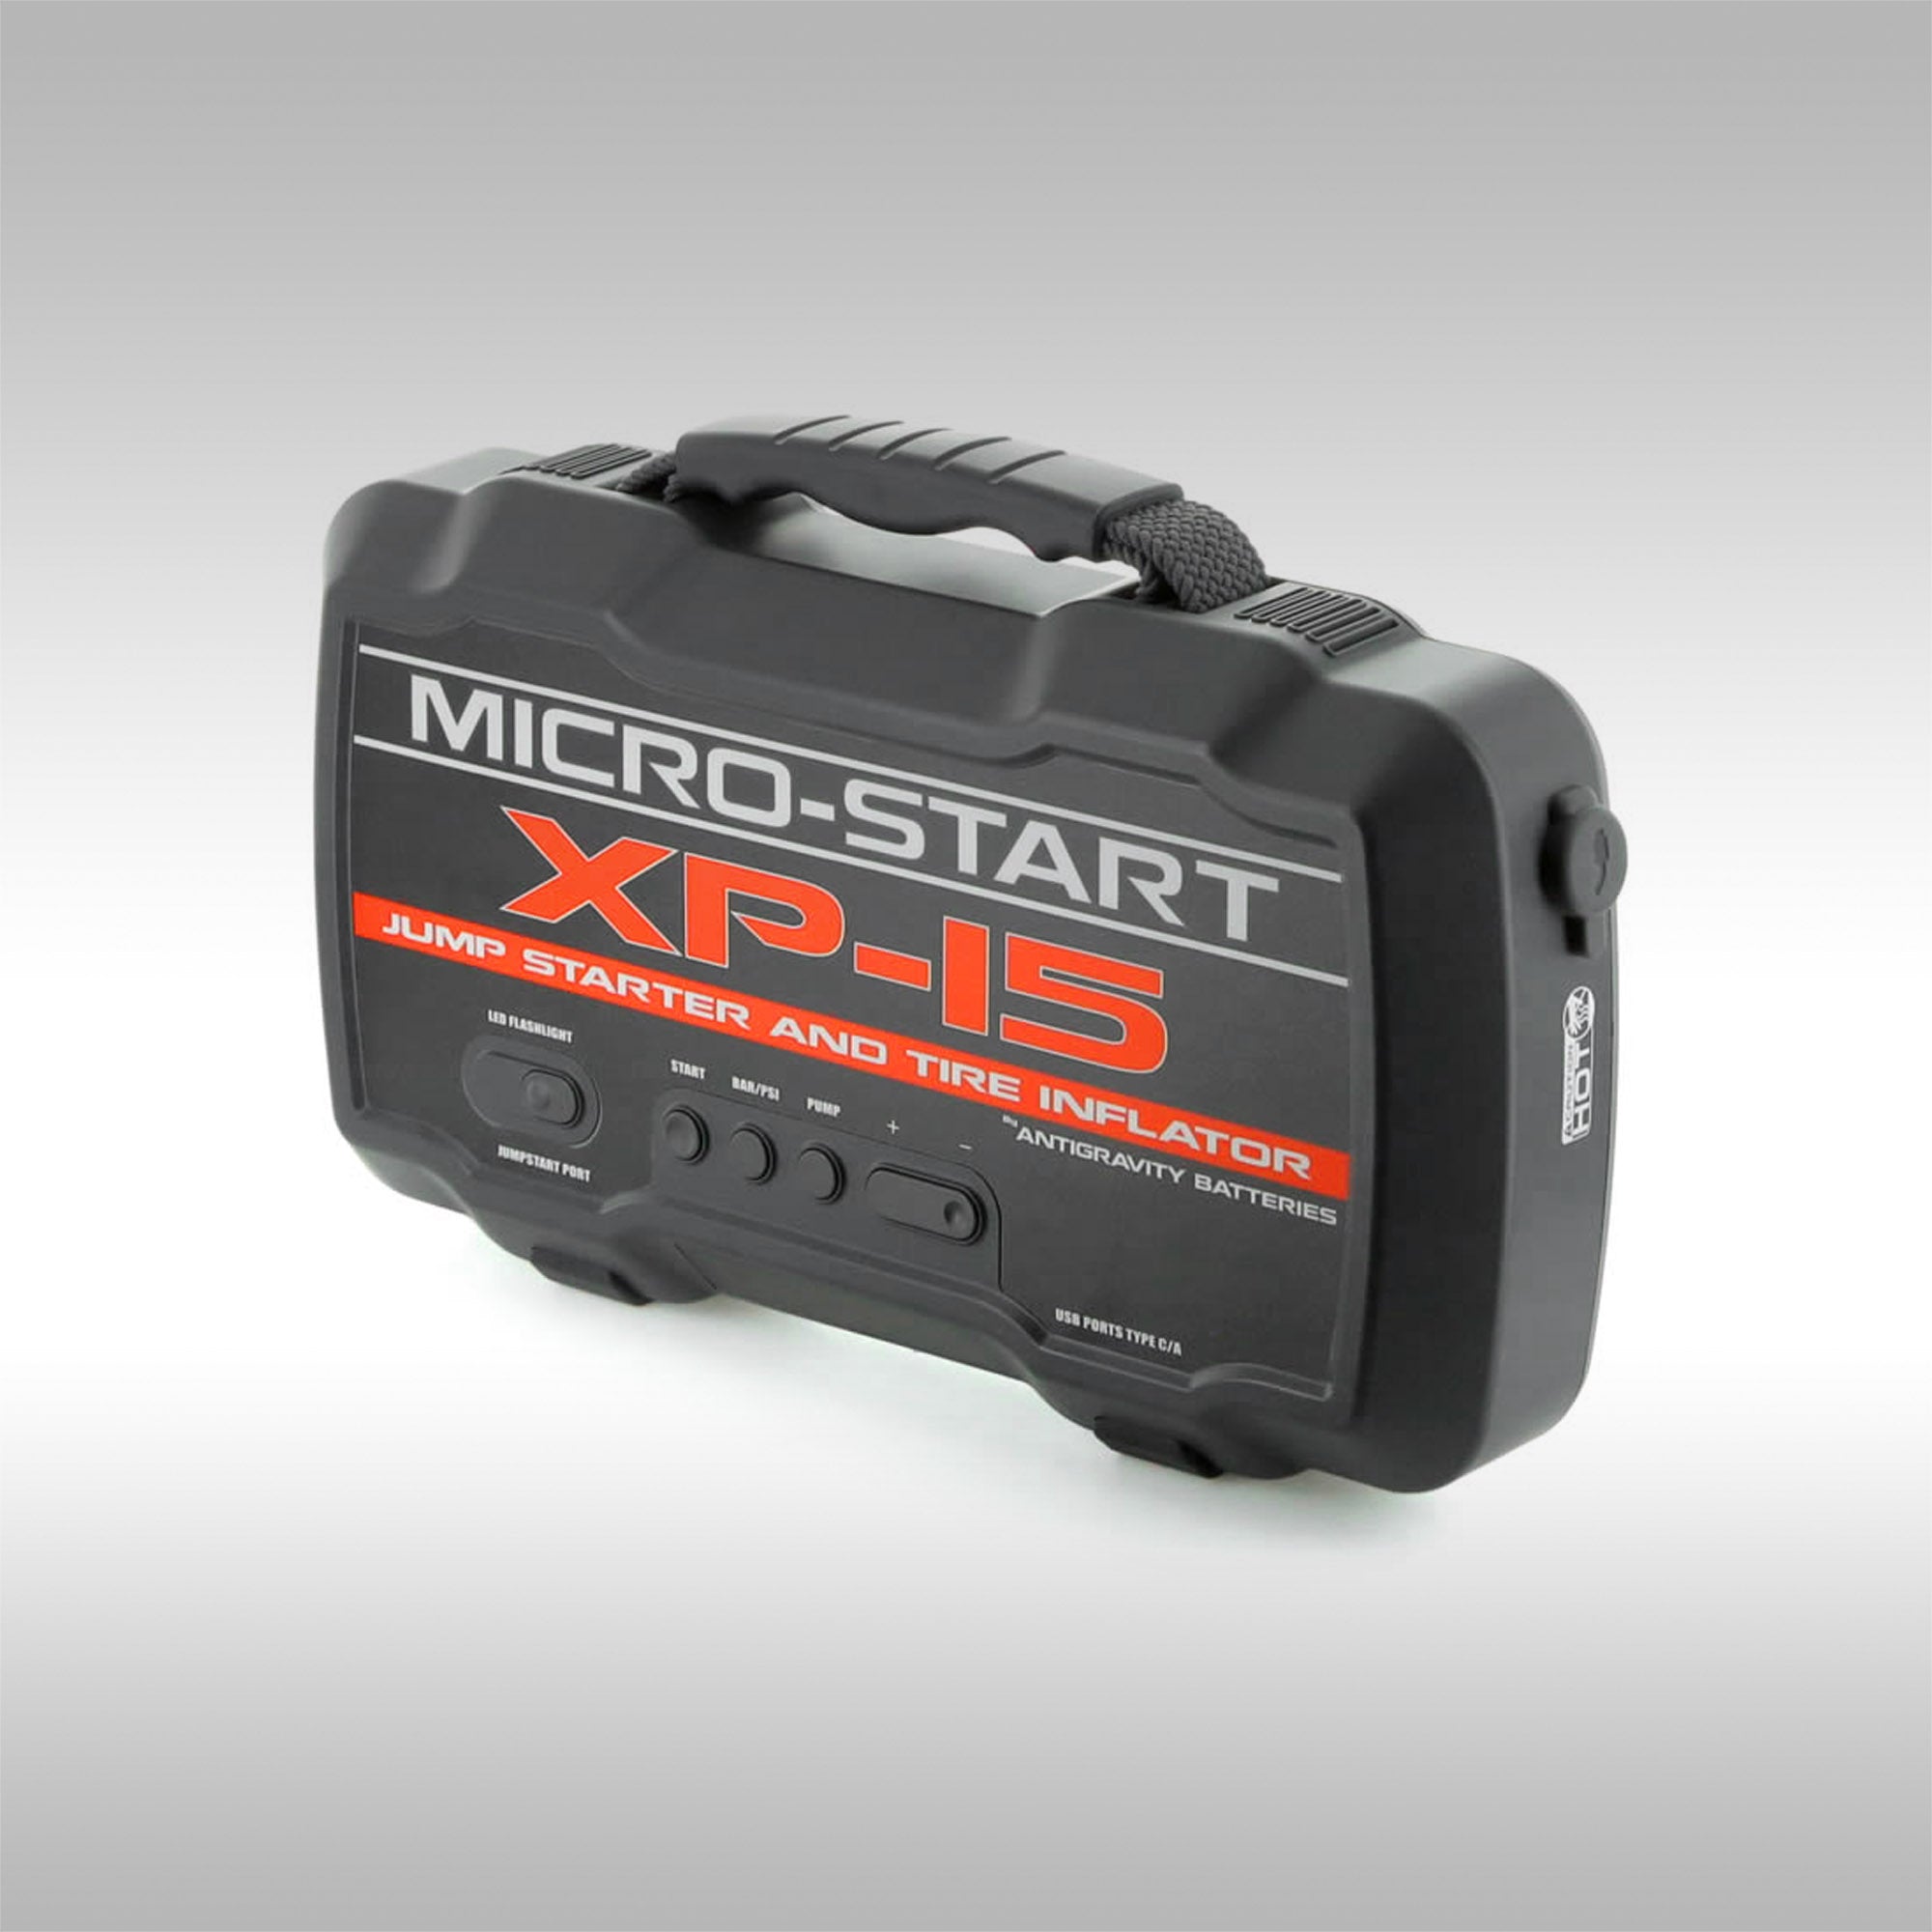 XP Micro